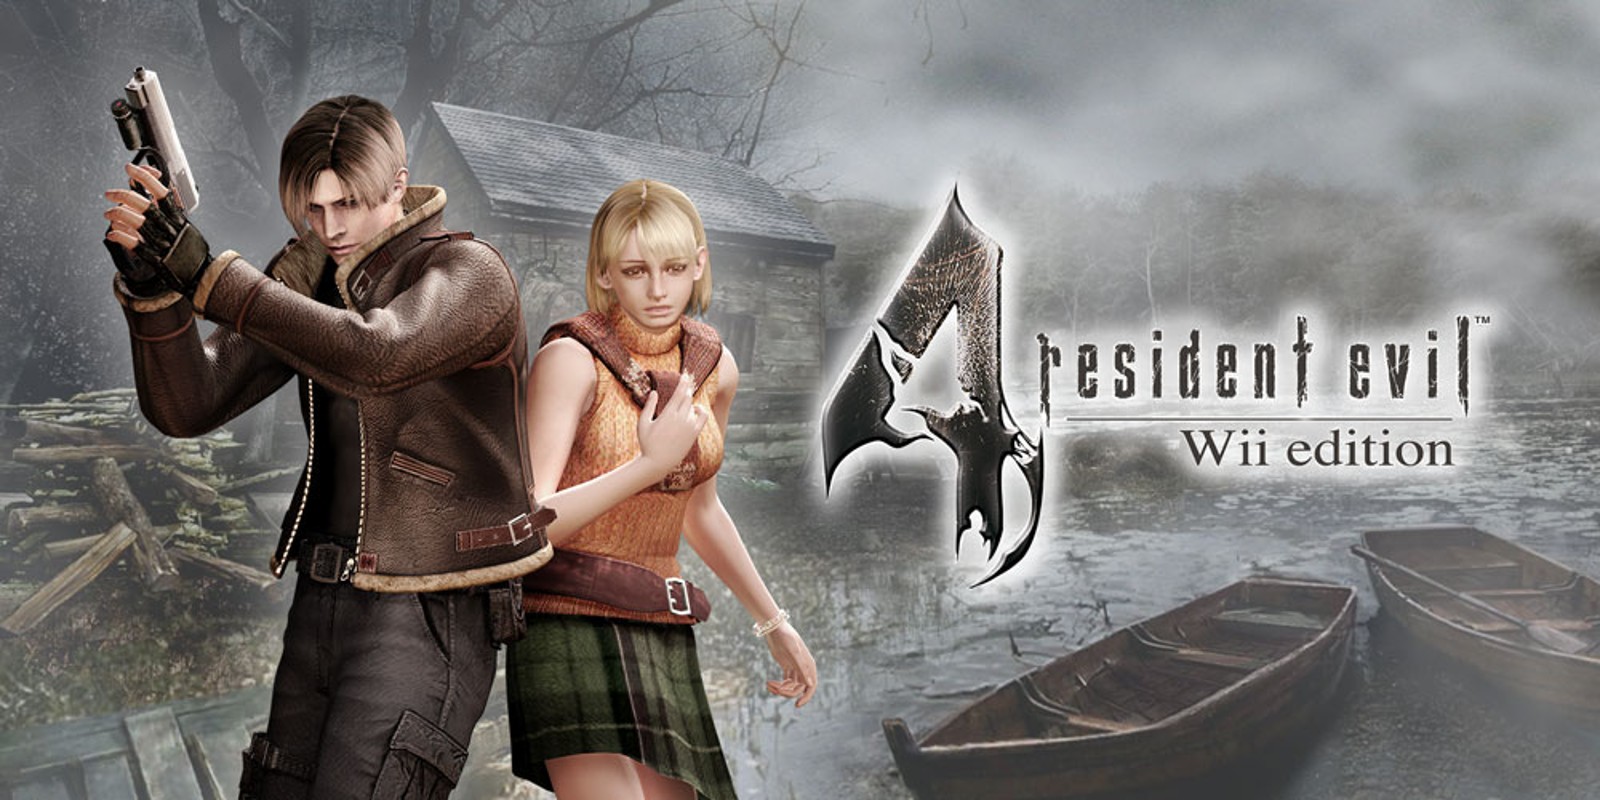 Ver Resident Evil 4 Online Castellano